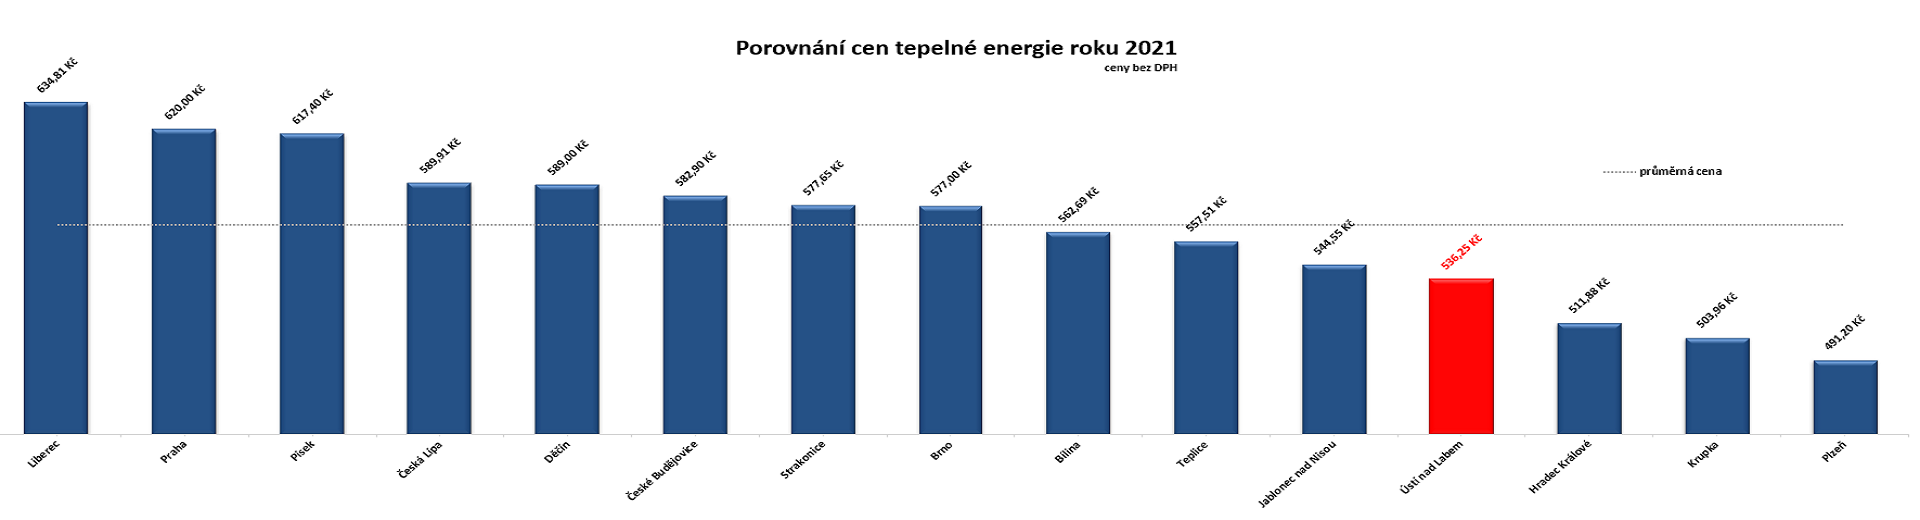 Porovnání cen tepelné energie roku 2021